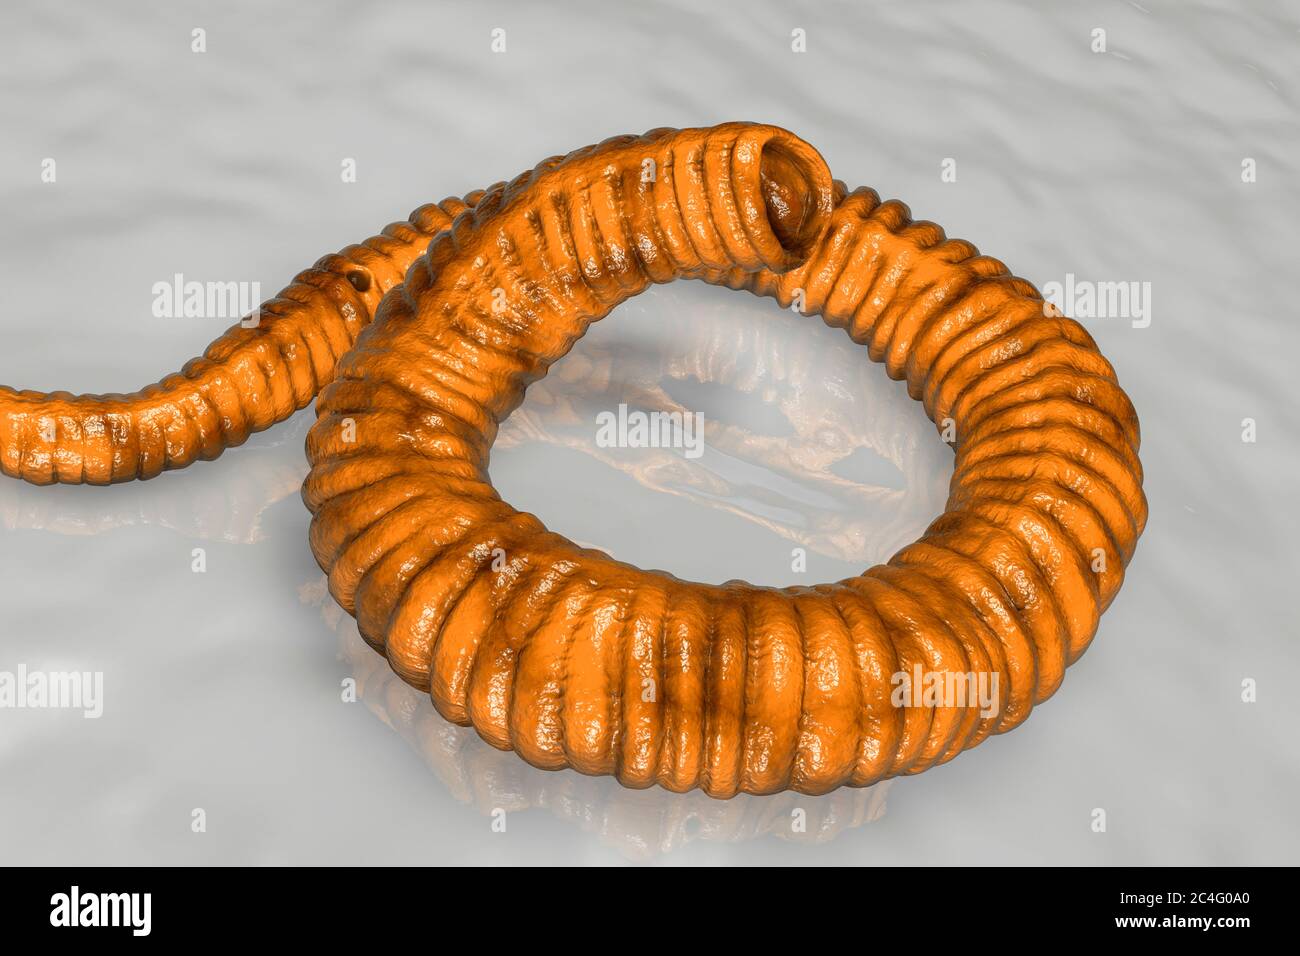 Verme di Guinea (Dracunculus medinensis) larva di primo stadio, illustrazione del computer. Le larve sono escrete da vermi femmine parassitizzanti sotto la pelle delle estremità umane in pazienti con draconcoliosi. Foto Stock